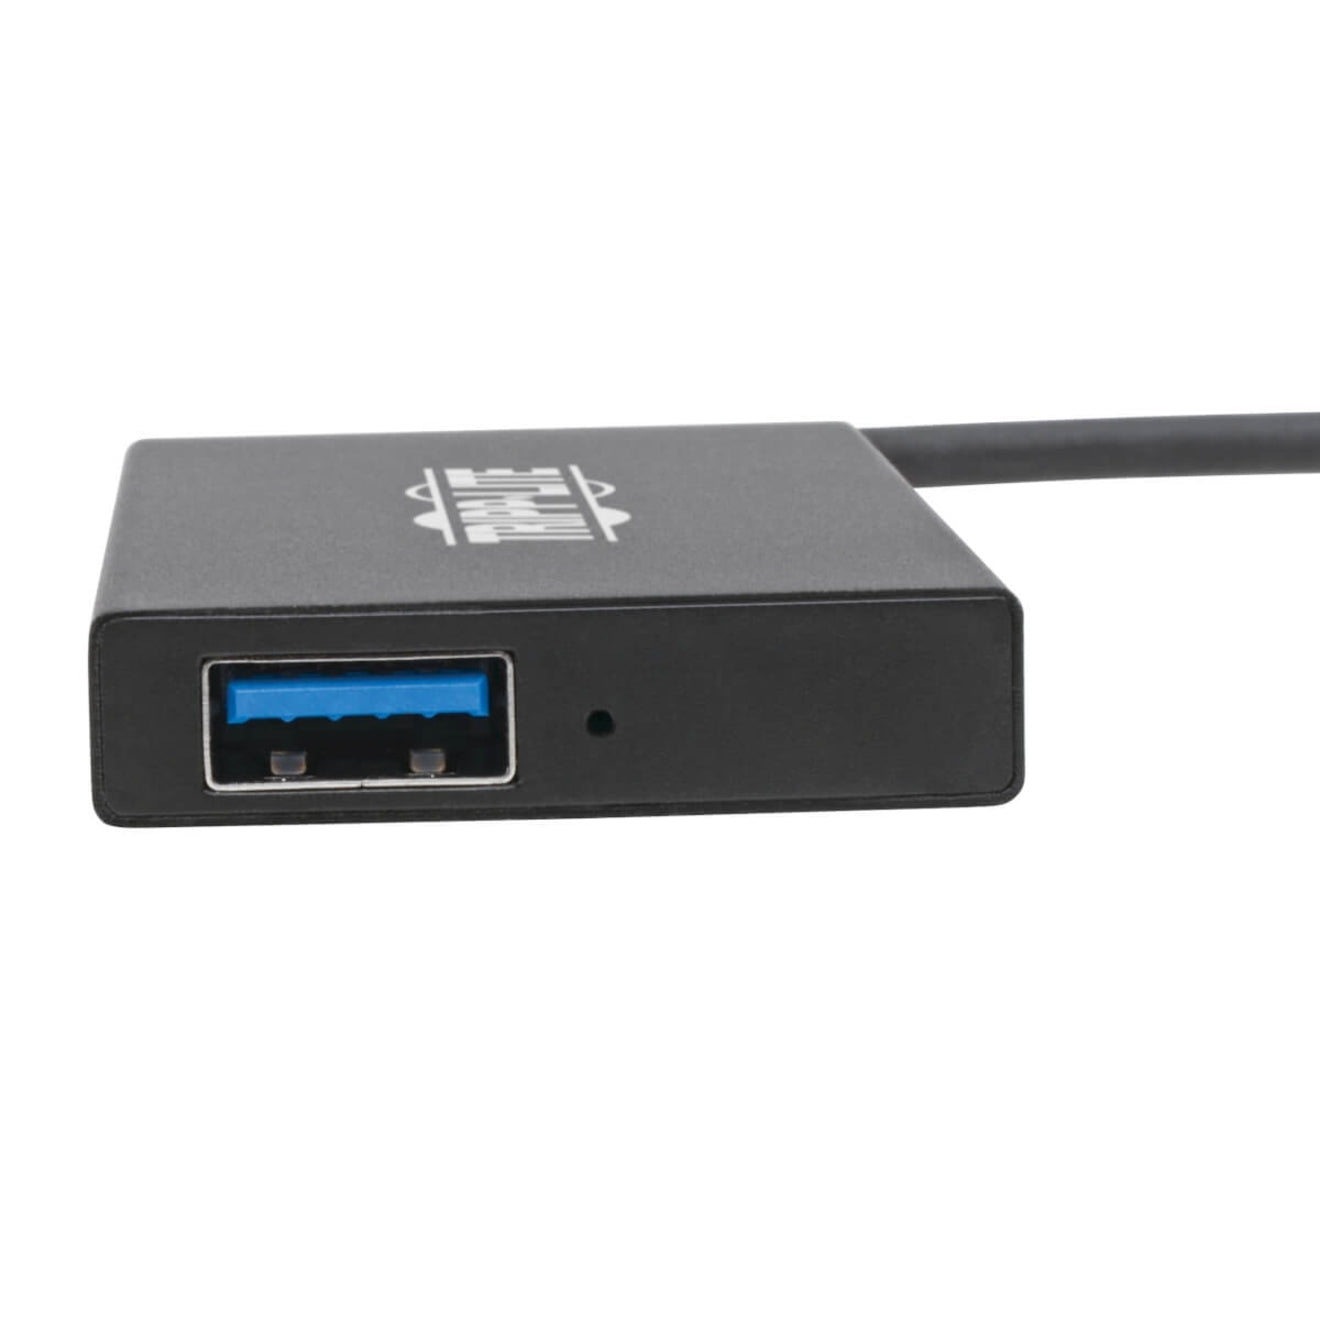 تريب لايت U360-004-4A-AL USB 3.0 سوبر سبيد سليم هاب، 4 منافذ USB-A، محمول، ألومنيوم